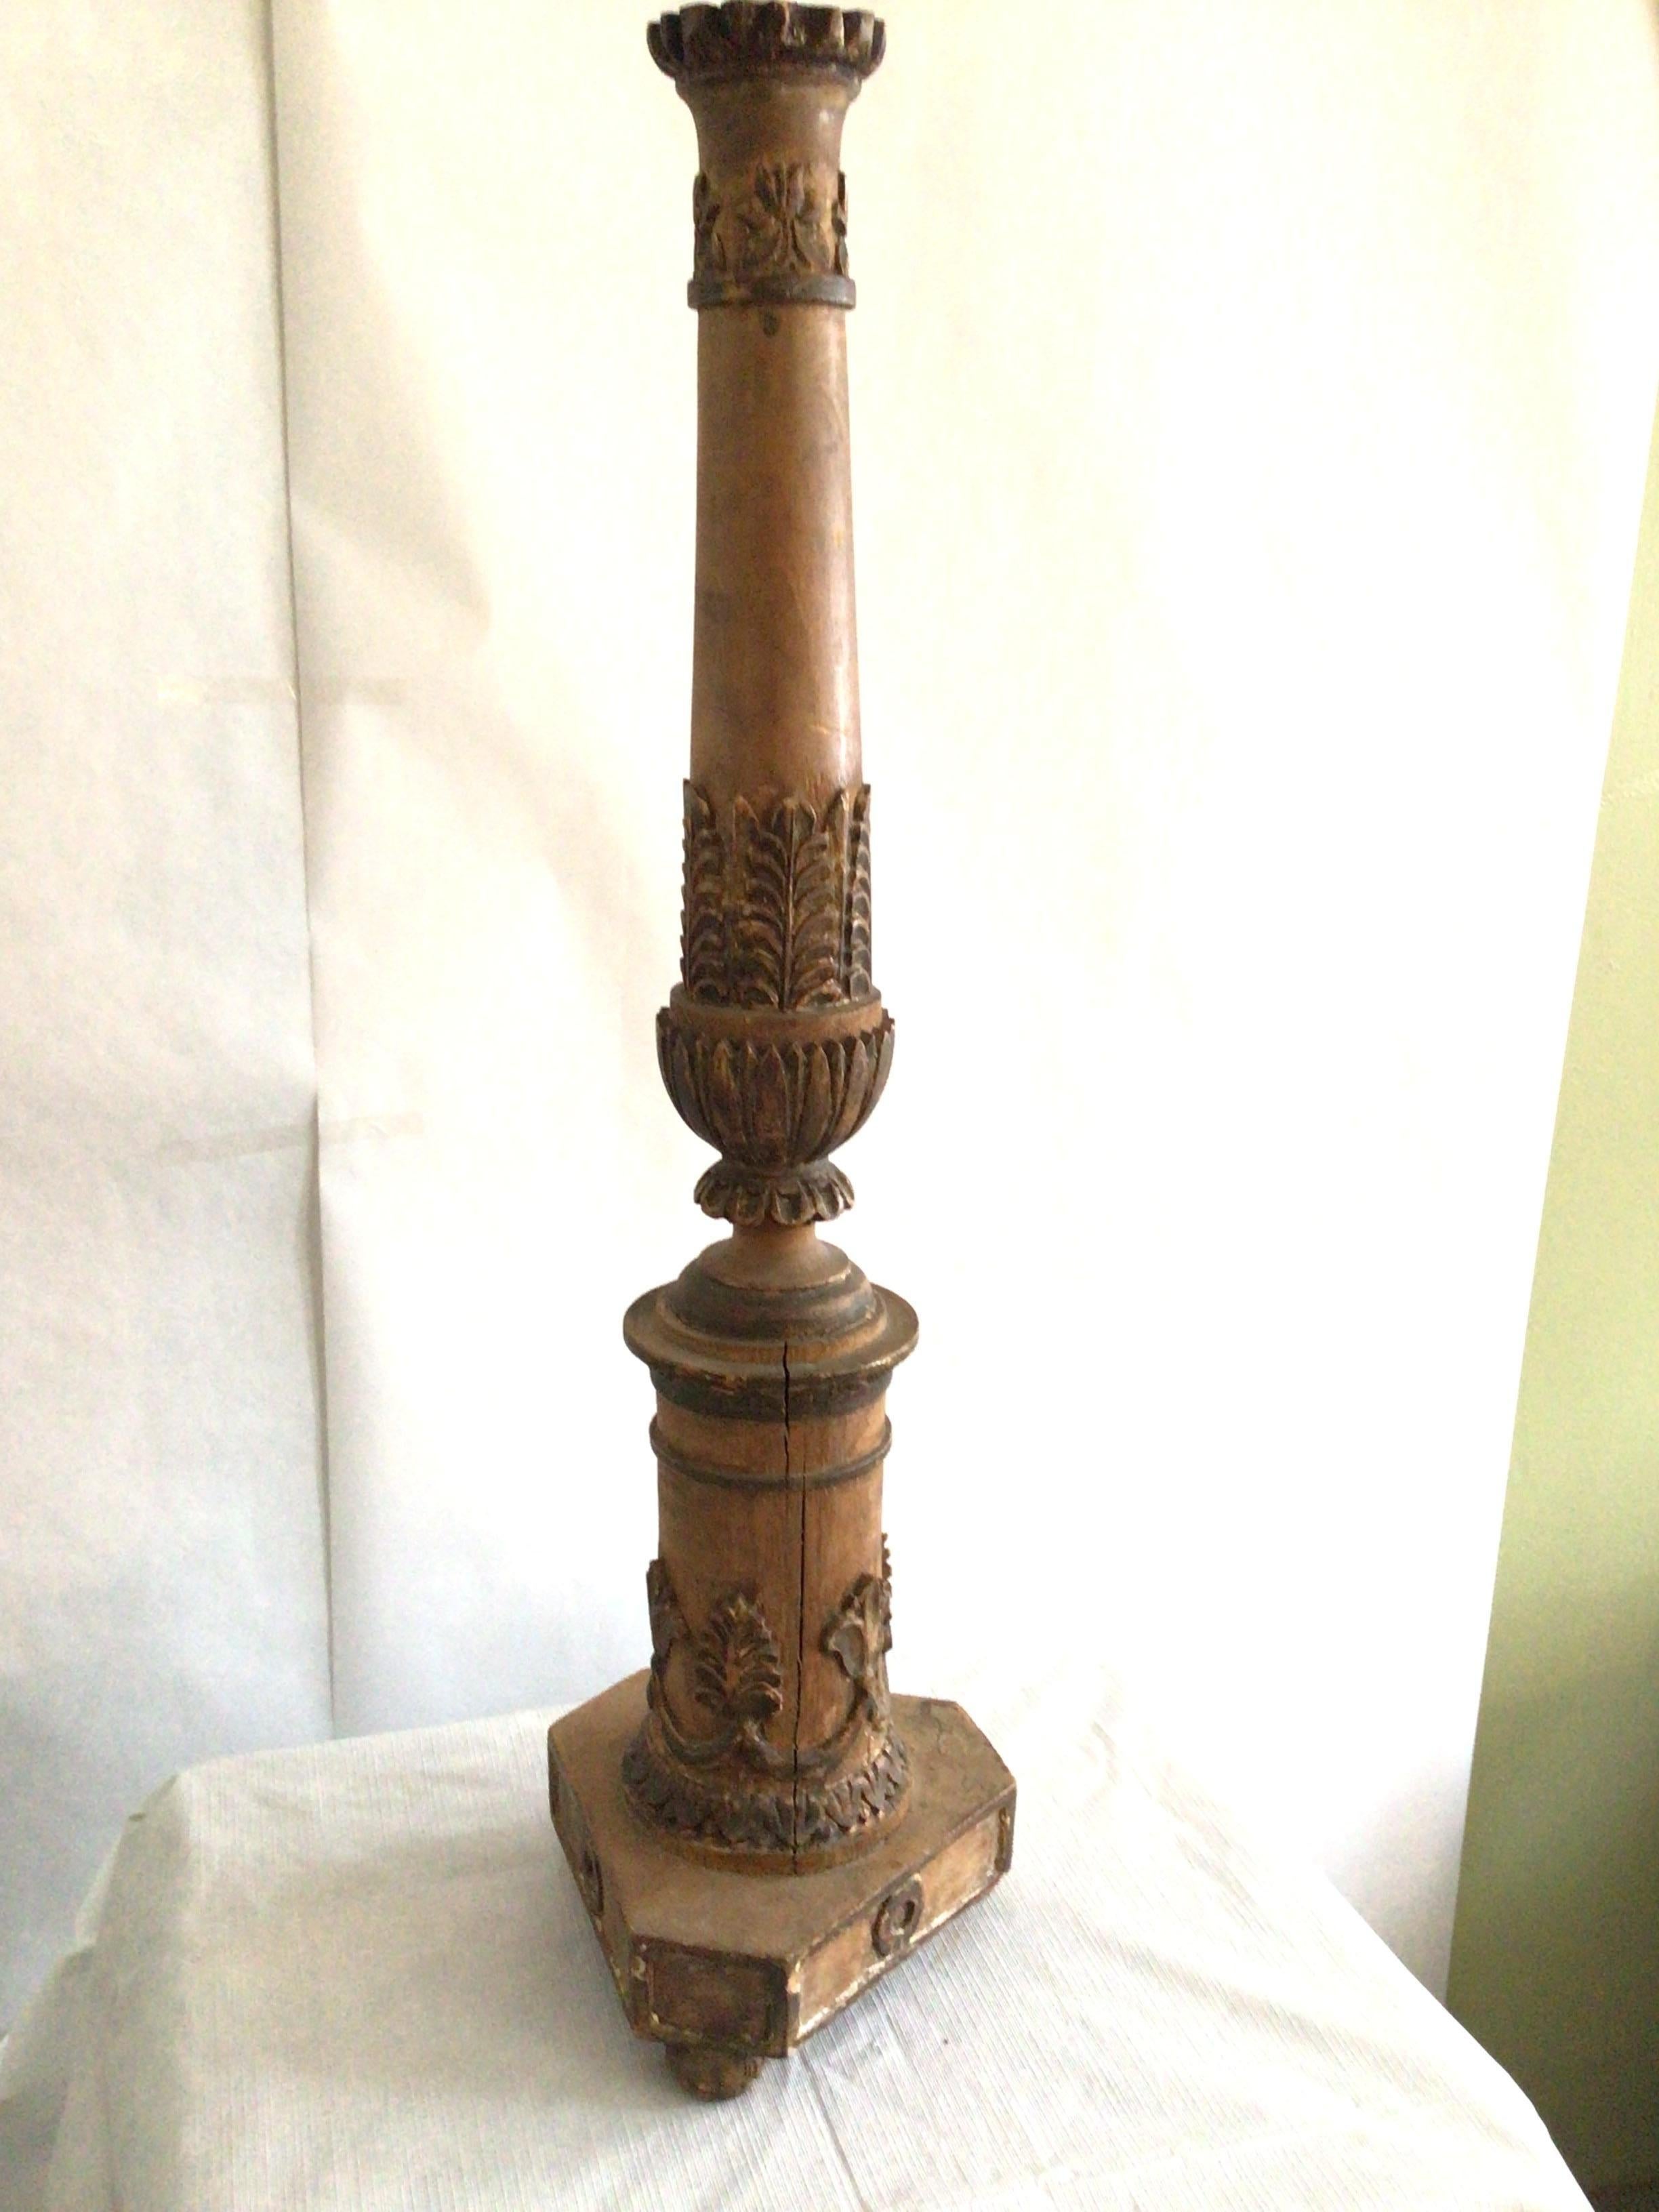 Geschnitzte Holzsäulen-Tischlampe aus den 1950er Jahren mit Akanthusblättern.
Maße: Höhe bis zur Oberkante des Kreuzblatts.